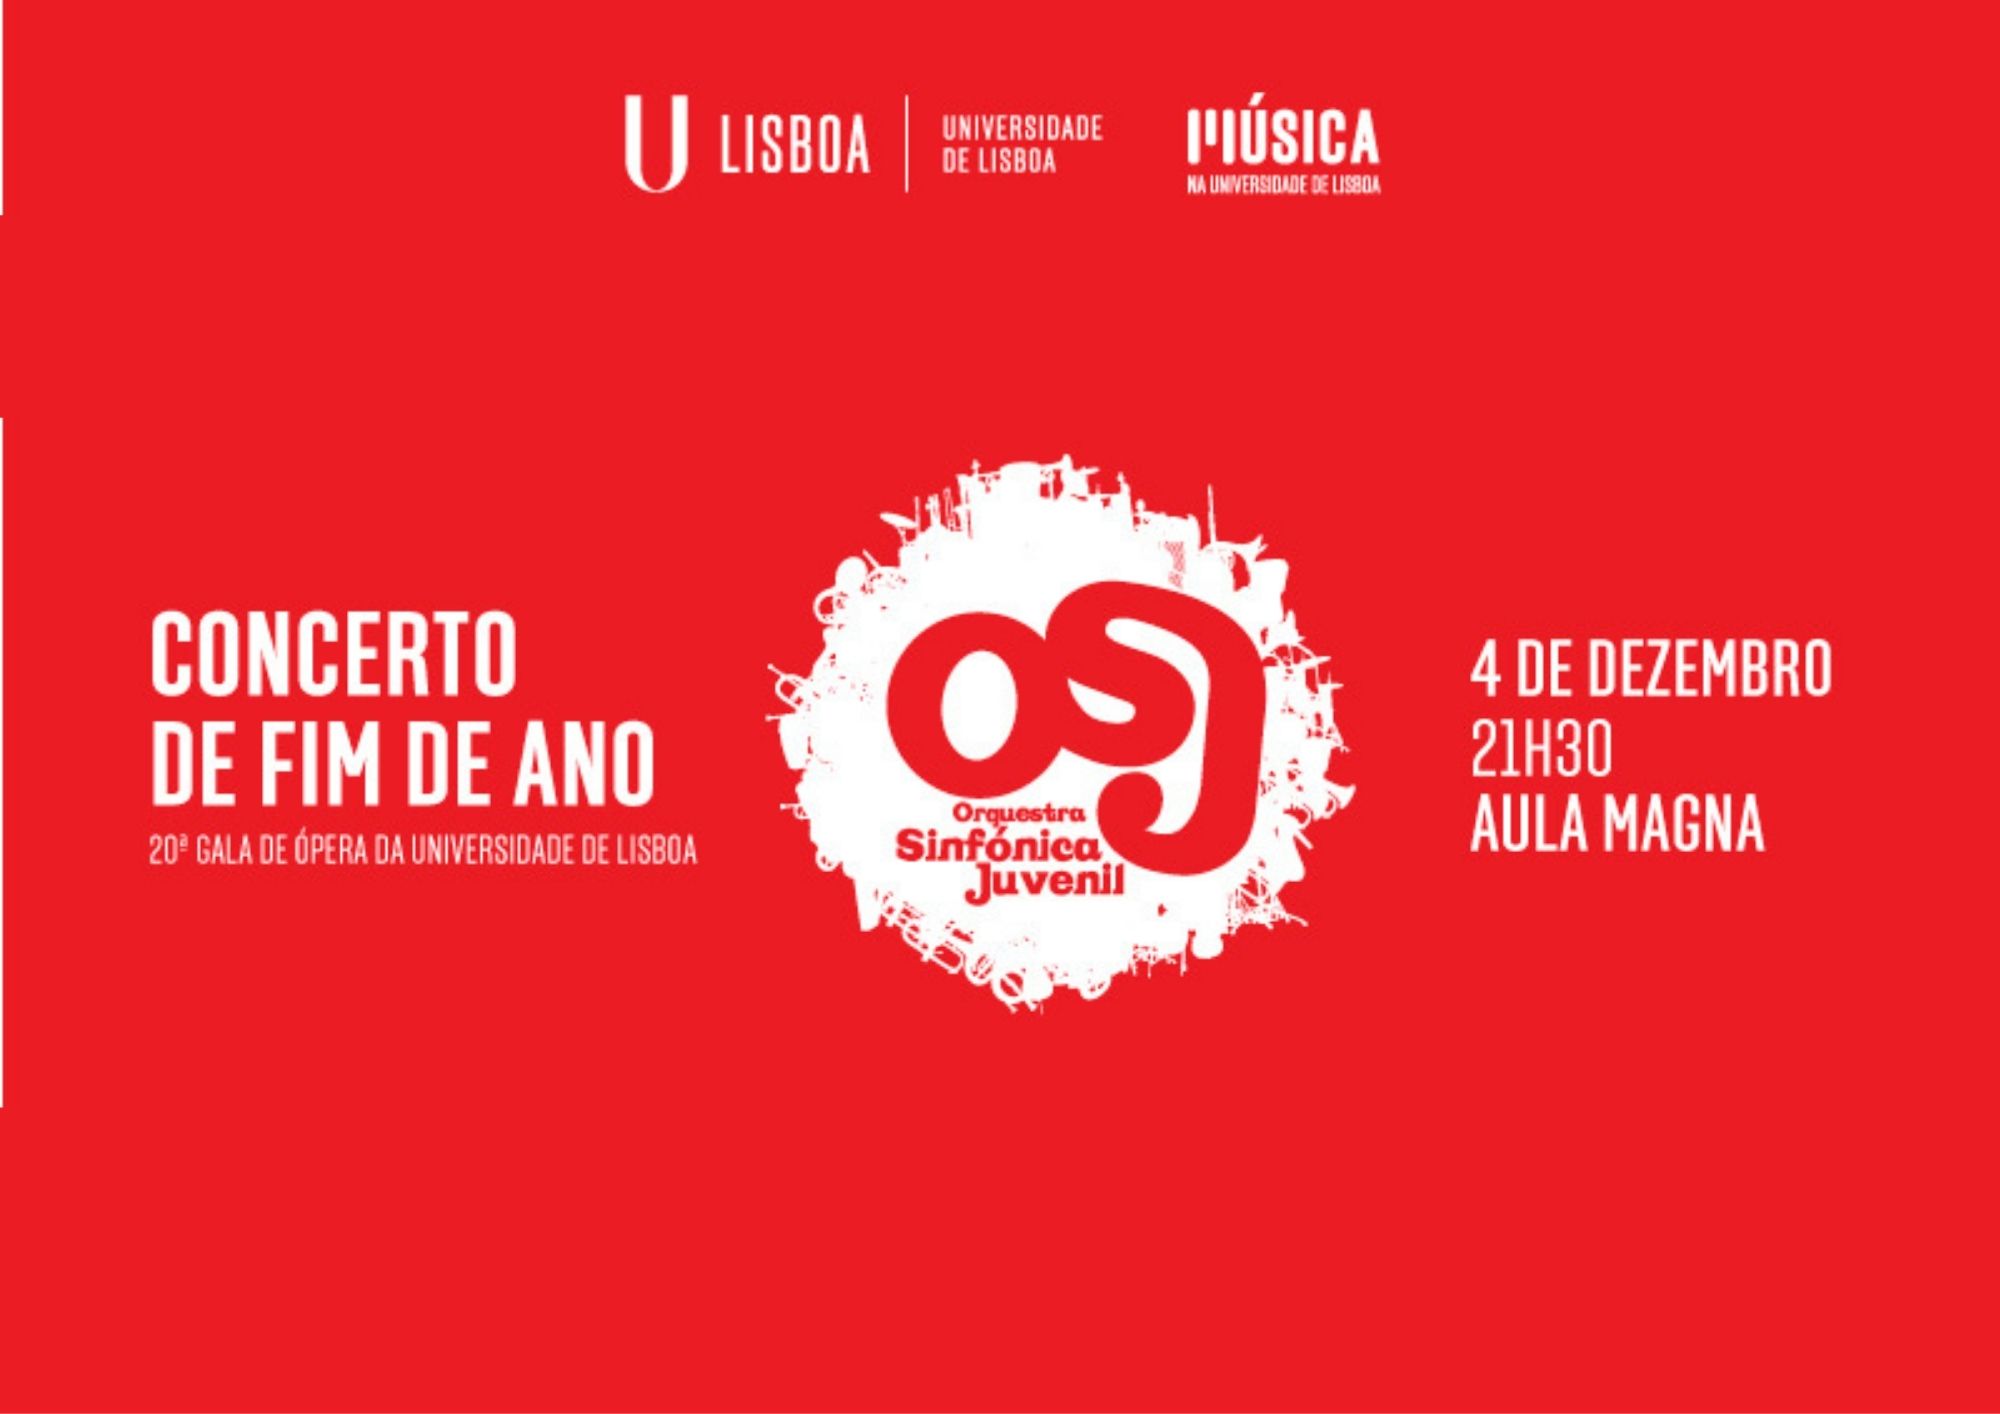  Concerto de Fim de Ano “20.ª Gala de Ópera da Universidade de Lisboa” que se realiza no dia 4 de dezembro, às 21h30, na Aula Magna da Reitoria